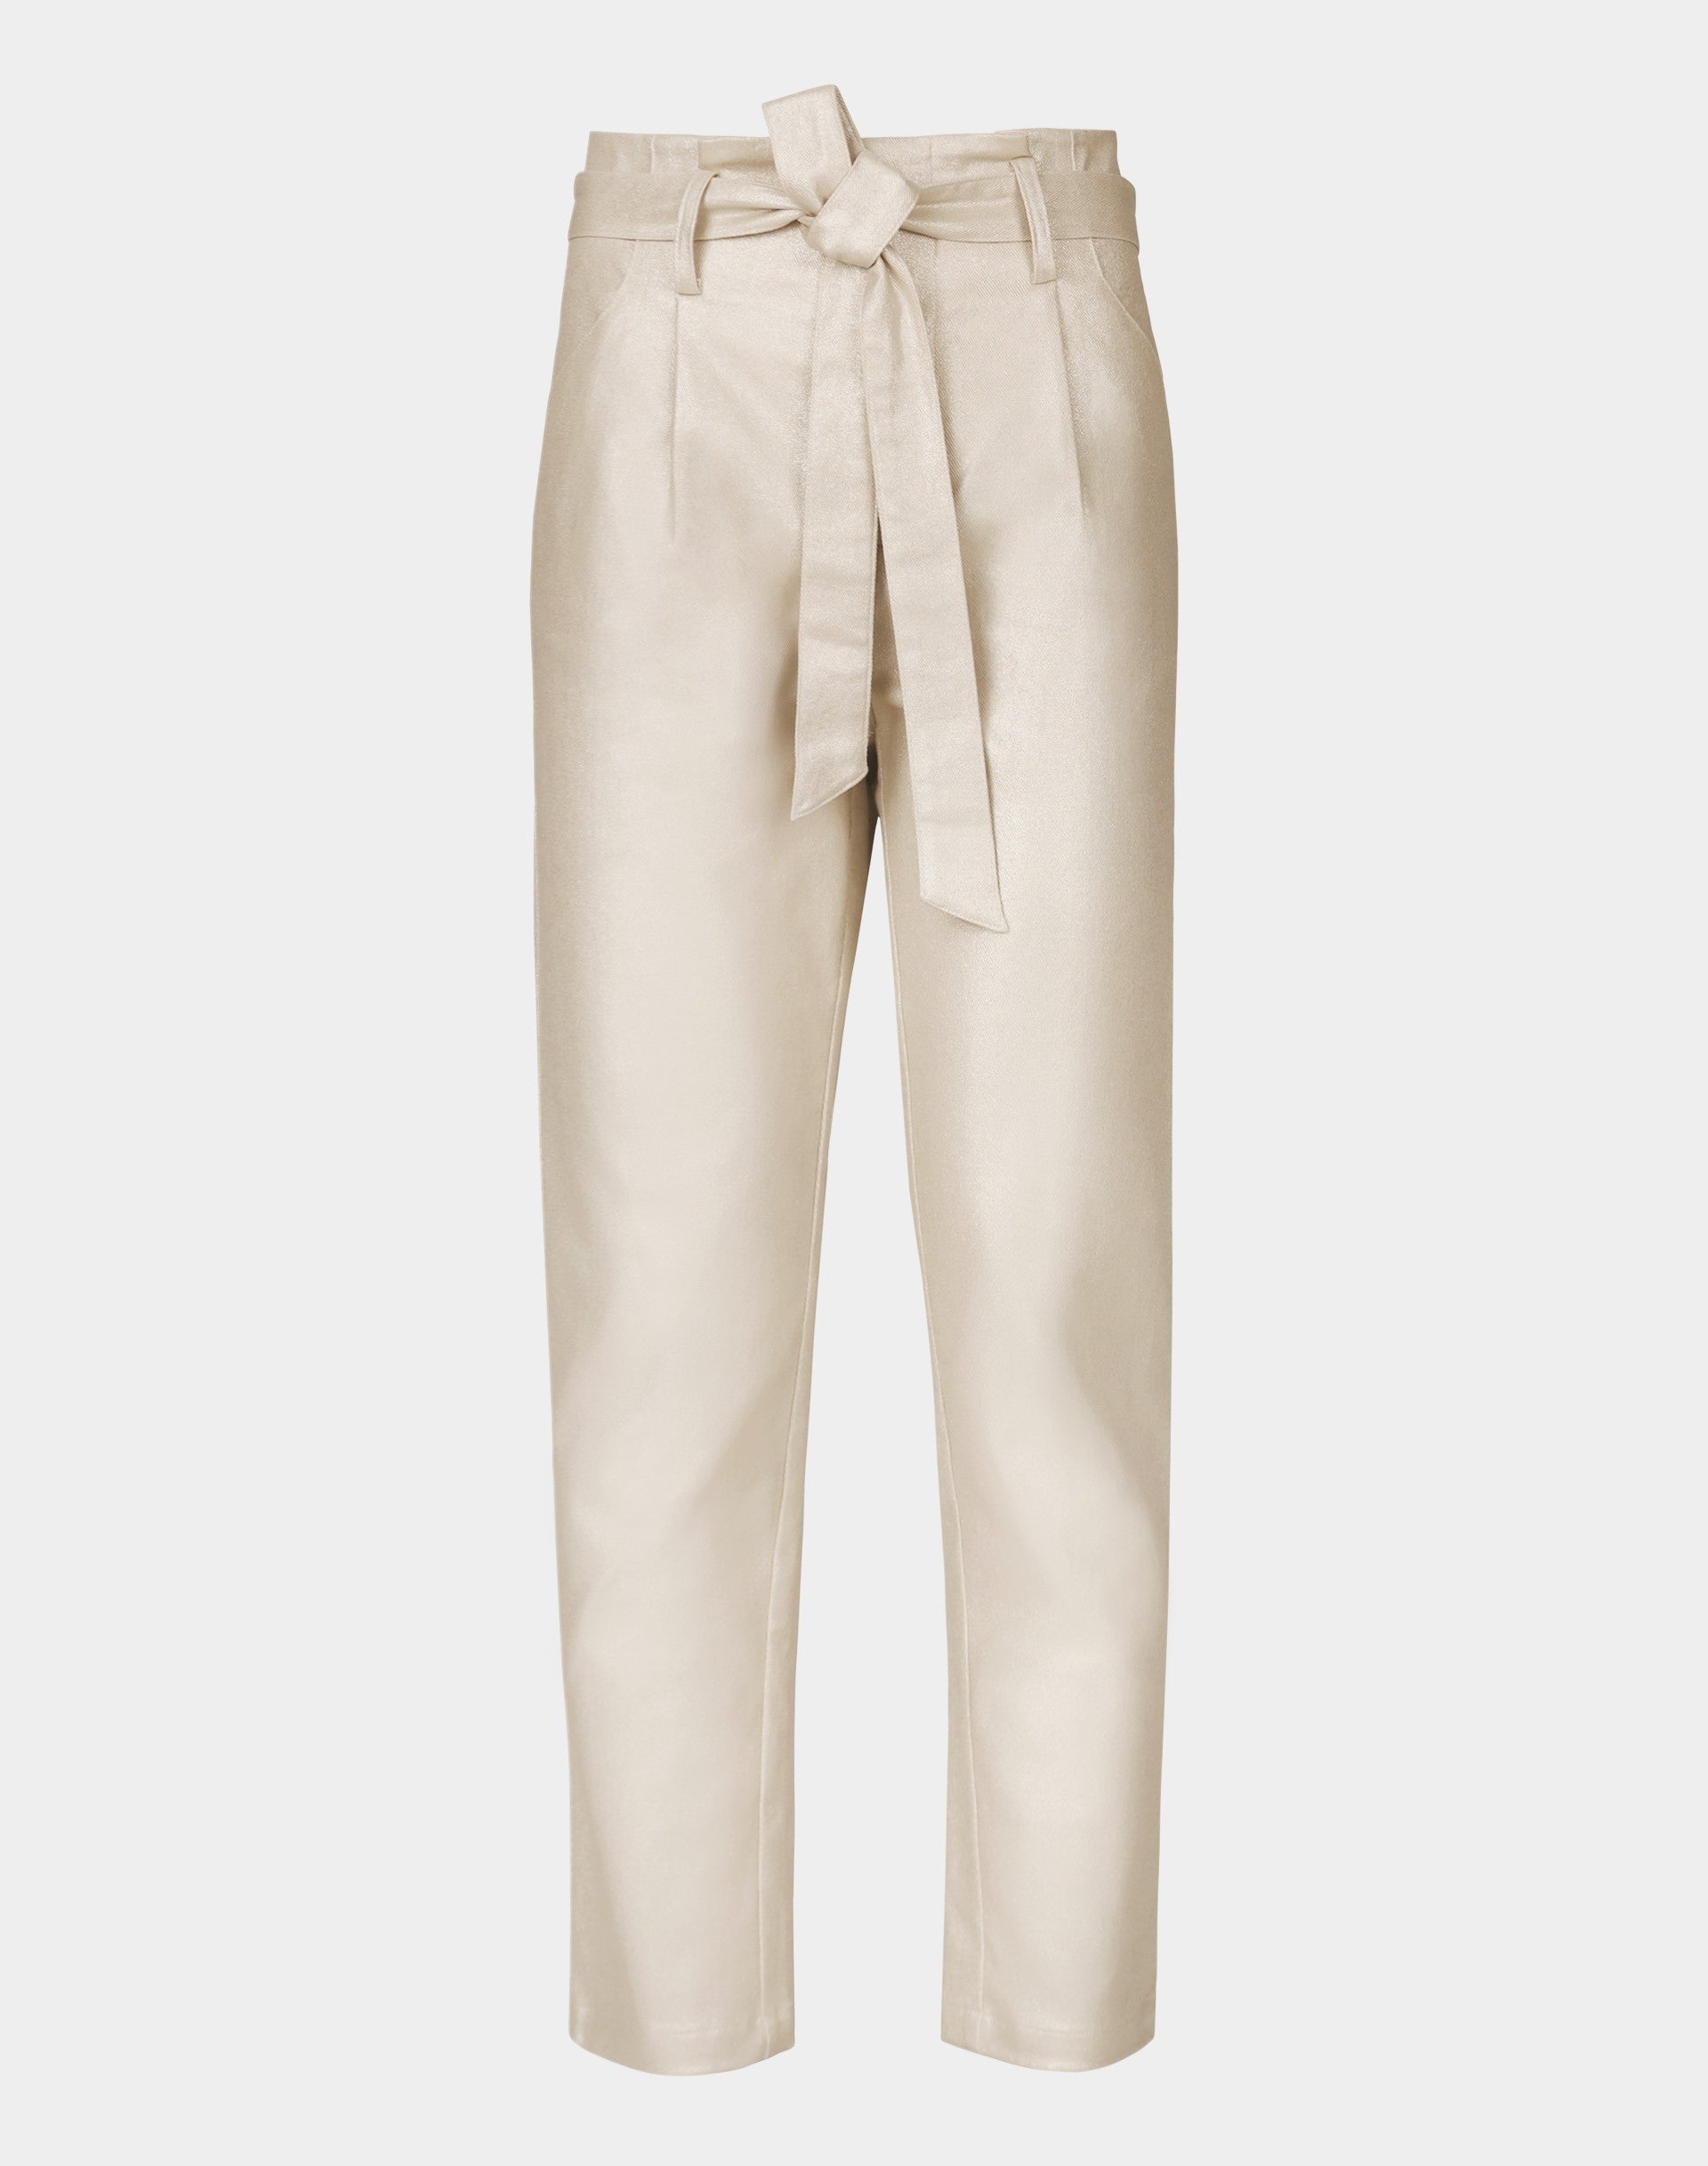 Metallic Belted Pant - Metallic - Pants - Cropped - Women's Clothing ...